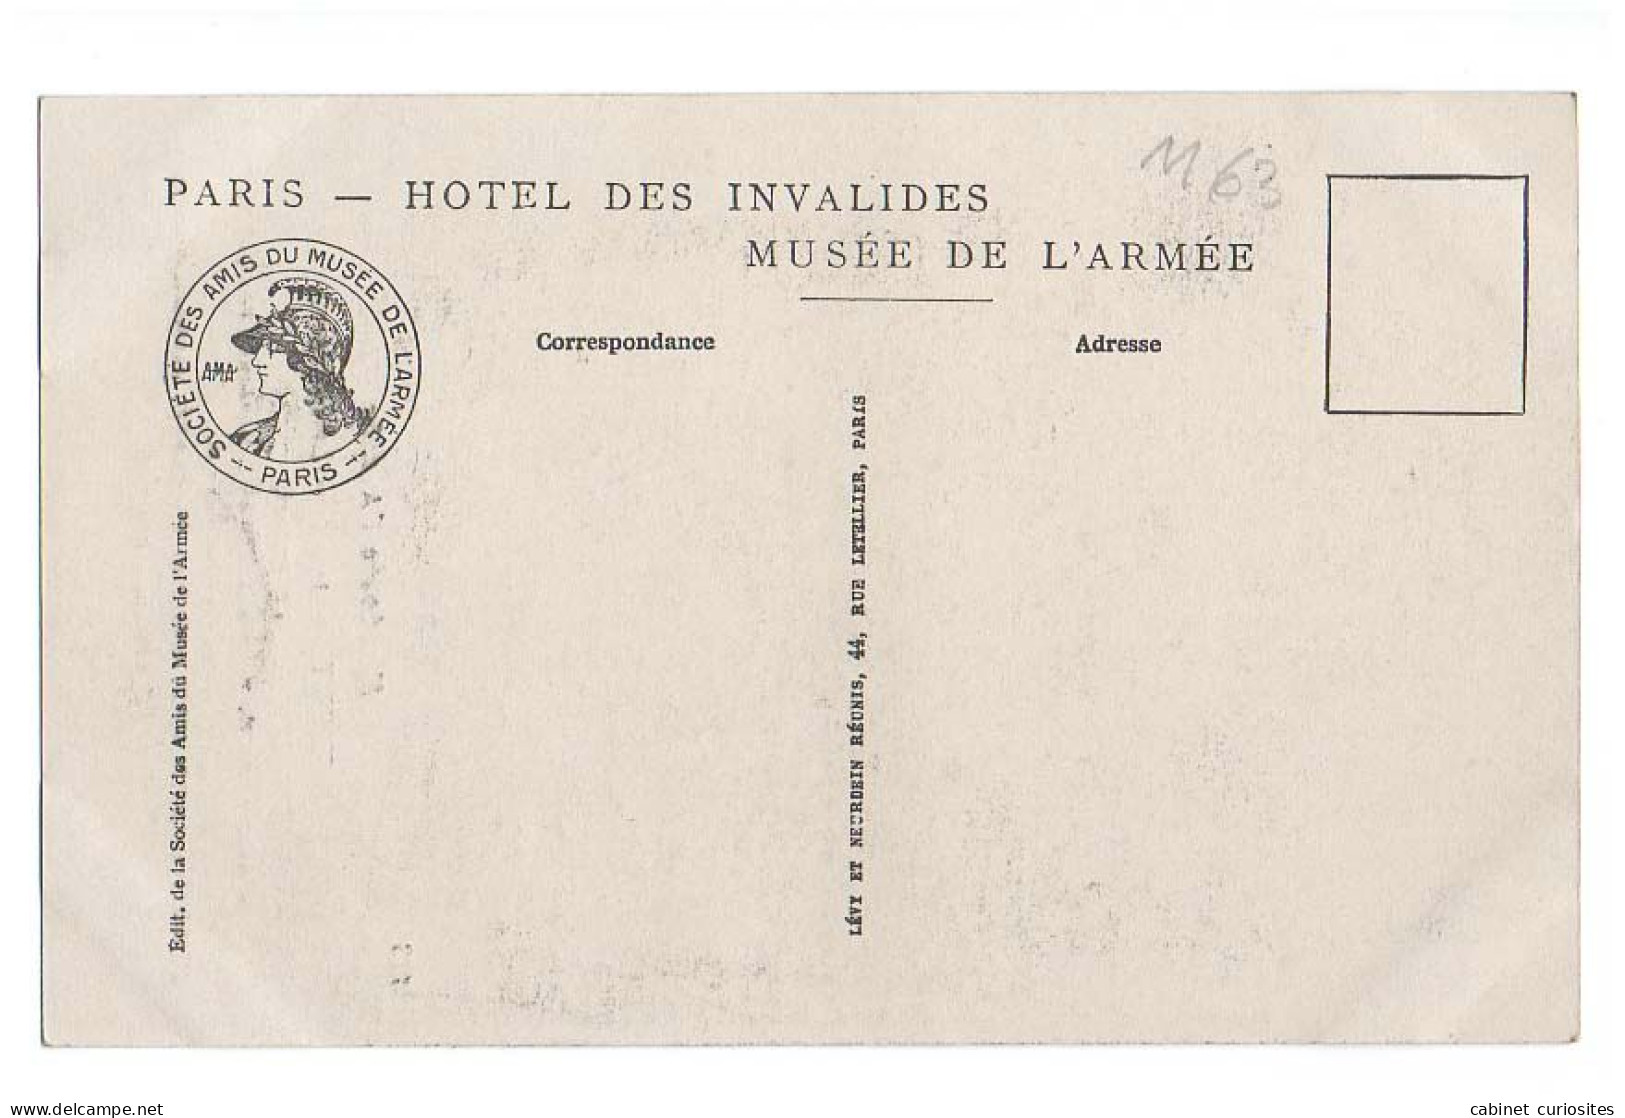 LIBÉRATEURS - Aubert 1918 - Le Poilu - Foch, Pétain, Fayolle, Clémenceau, De Castelnau, Poincaré, Galliéni, Joffre - Characters